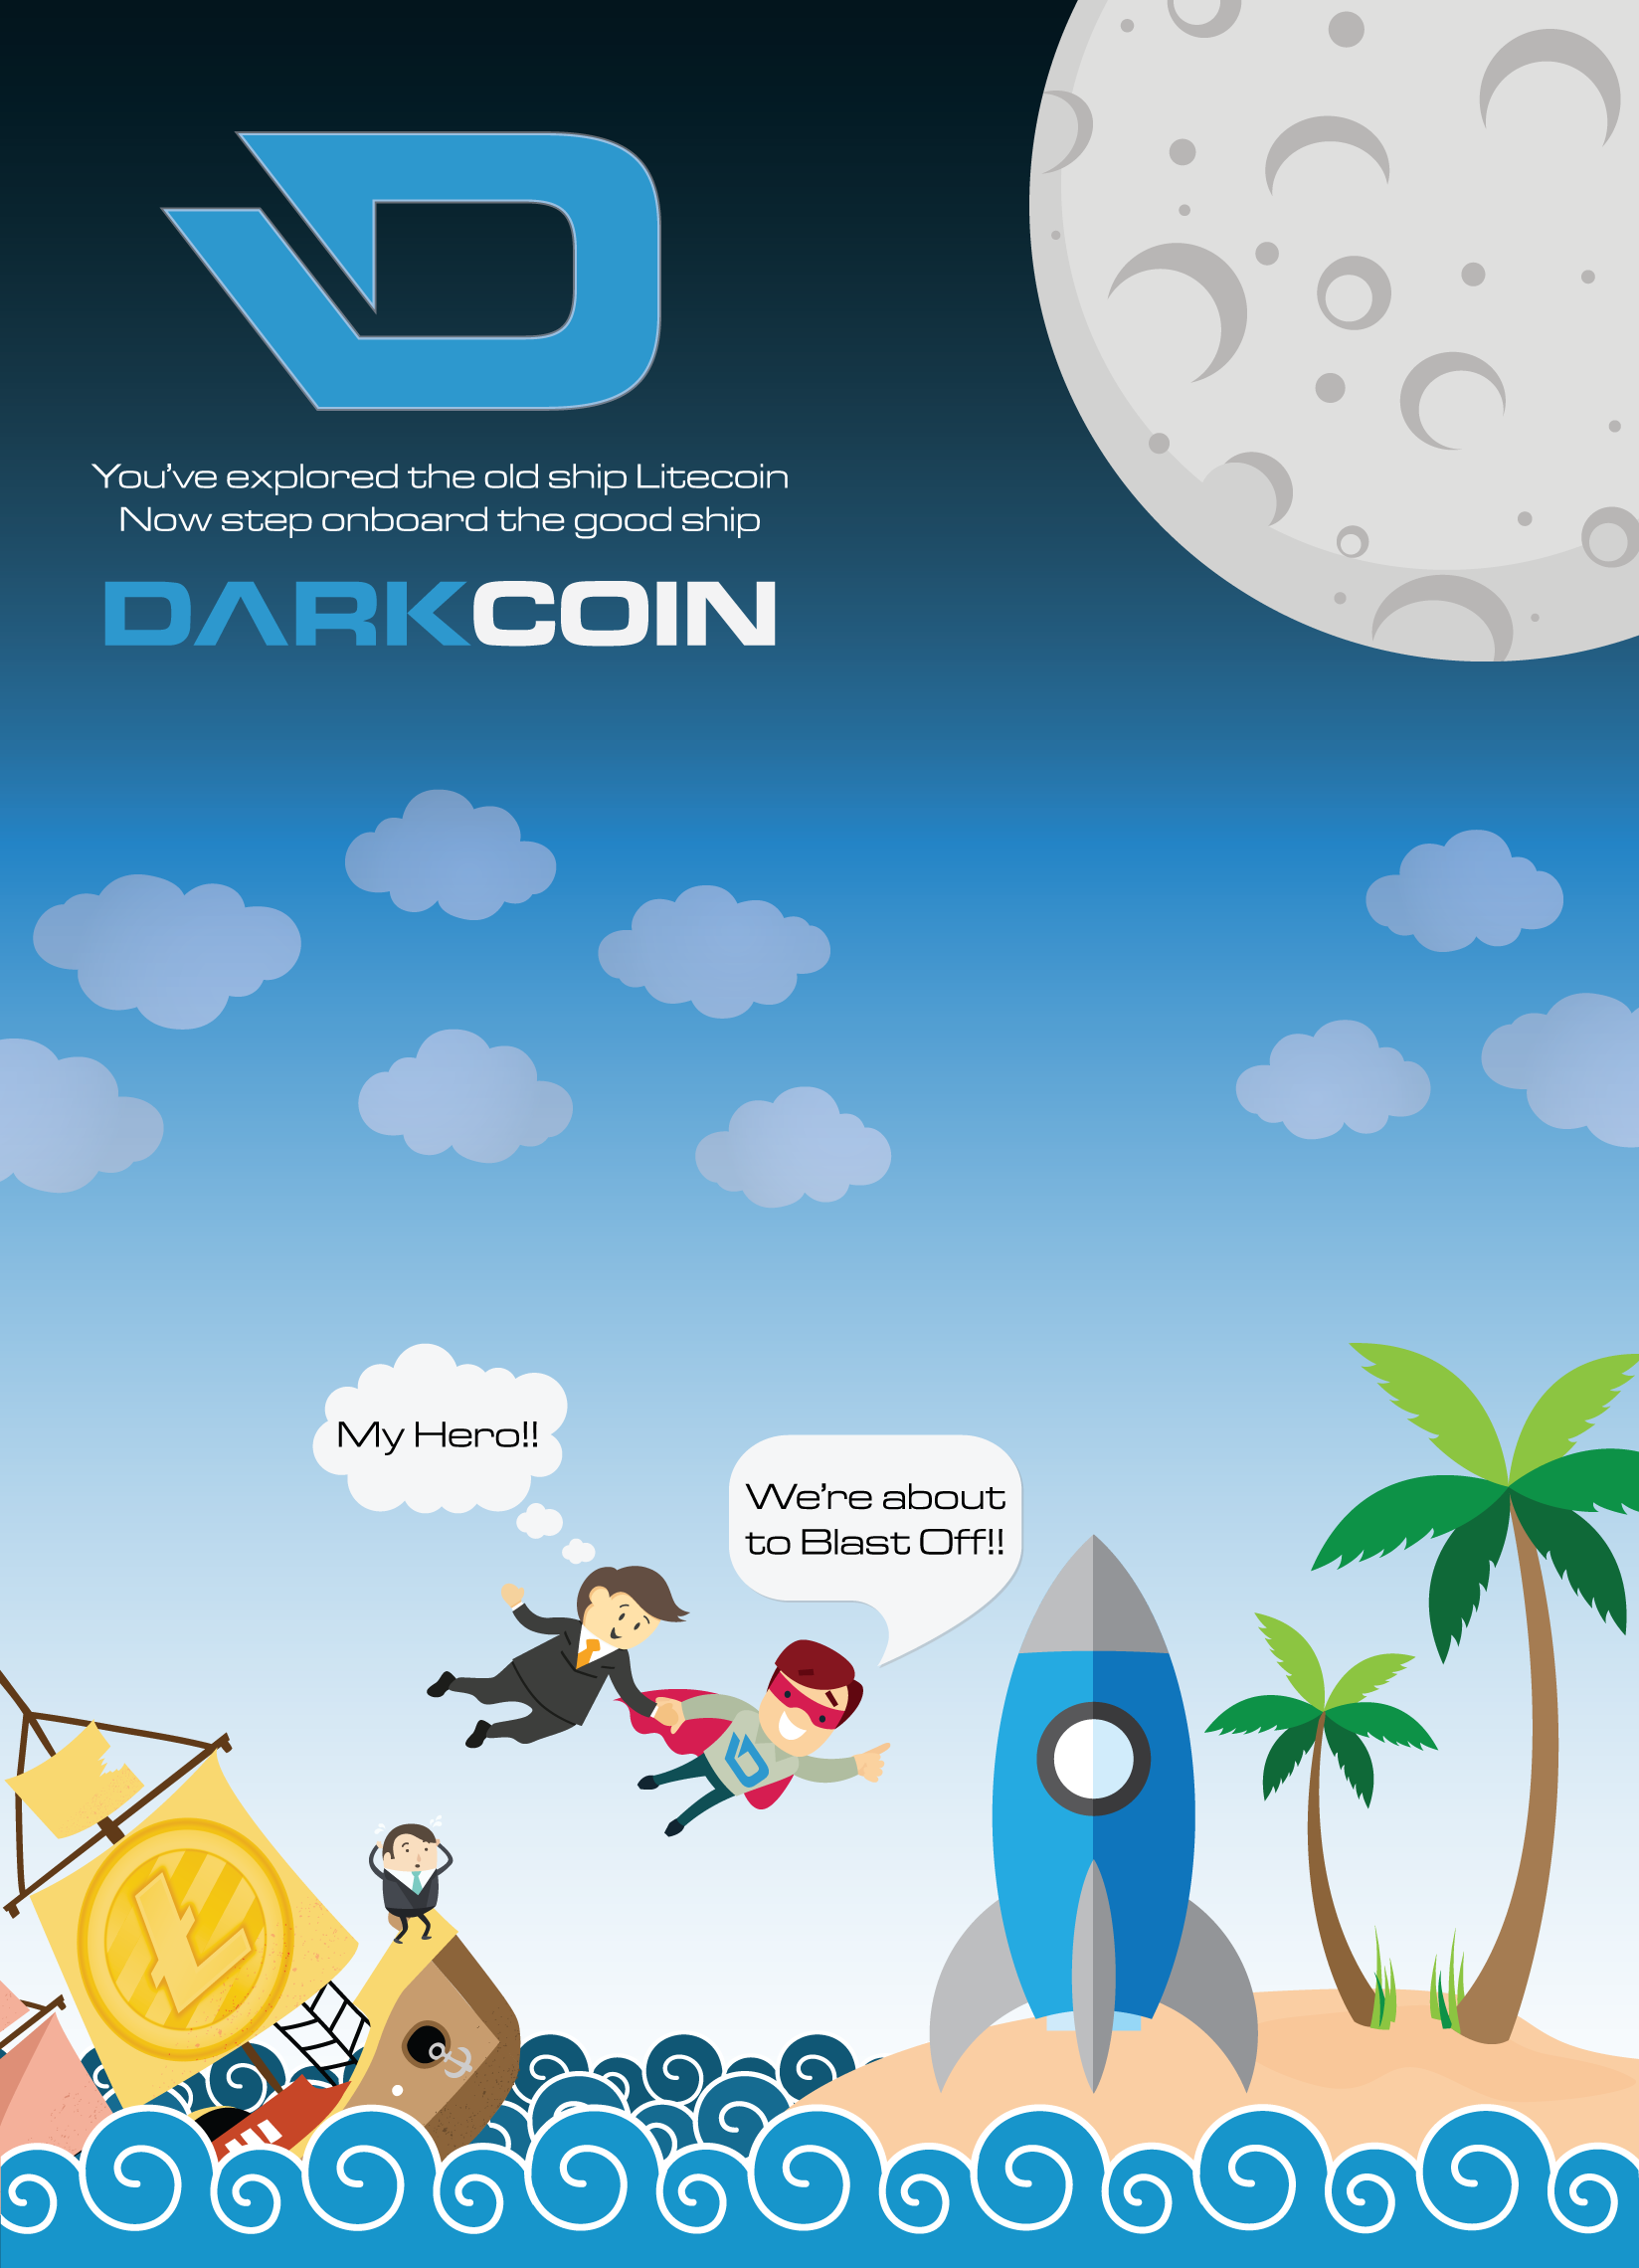 darkcoin_saving_litecoin_holders.png